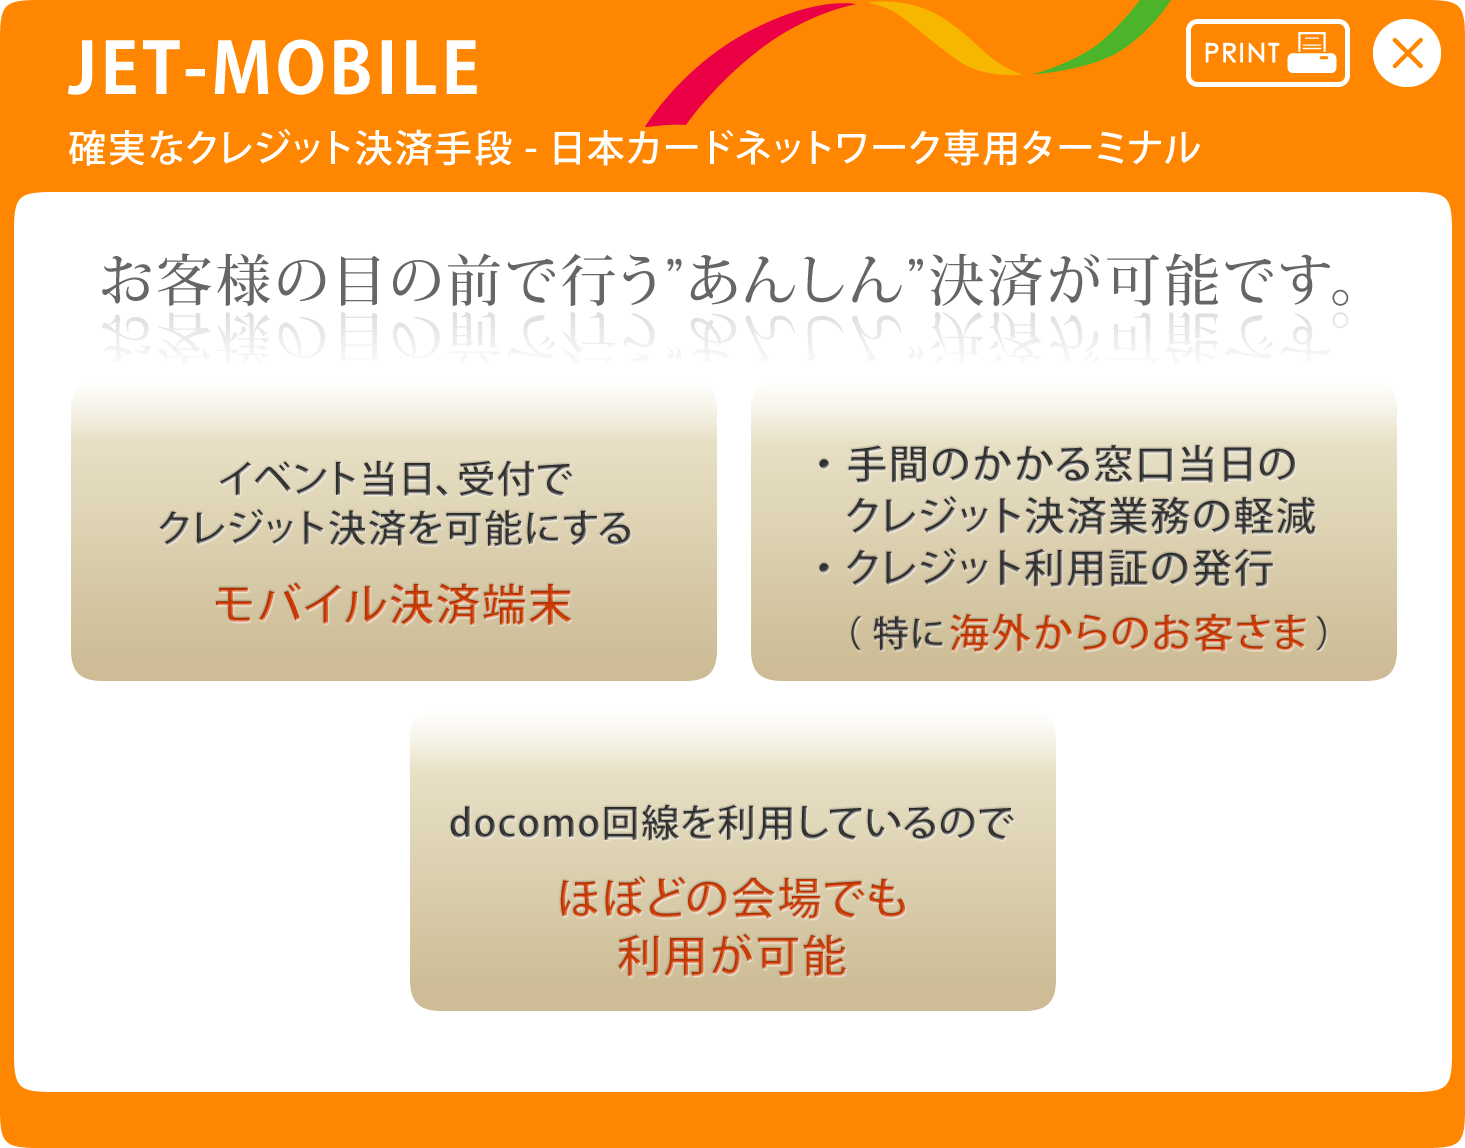 JET-MOBILE 確実なクレジット決済手段-日本カードネットワーク専用ターミナル お客様の目の前で行う”あんしん”決済が可能です。 イベント当日、受付でクレジット決済を可能にする-モバイル決済端末 ・手間のかかる窓口当日のクレジット決済業務の軽減・クレジット利用証の発行（特に海外からのお客さま） docomo回線を利用しているのでほぼどの会場でも利用が可能